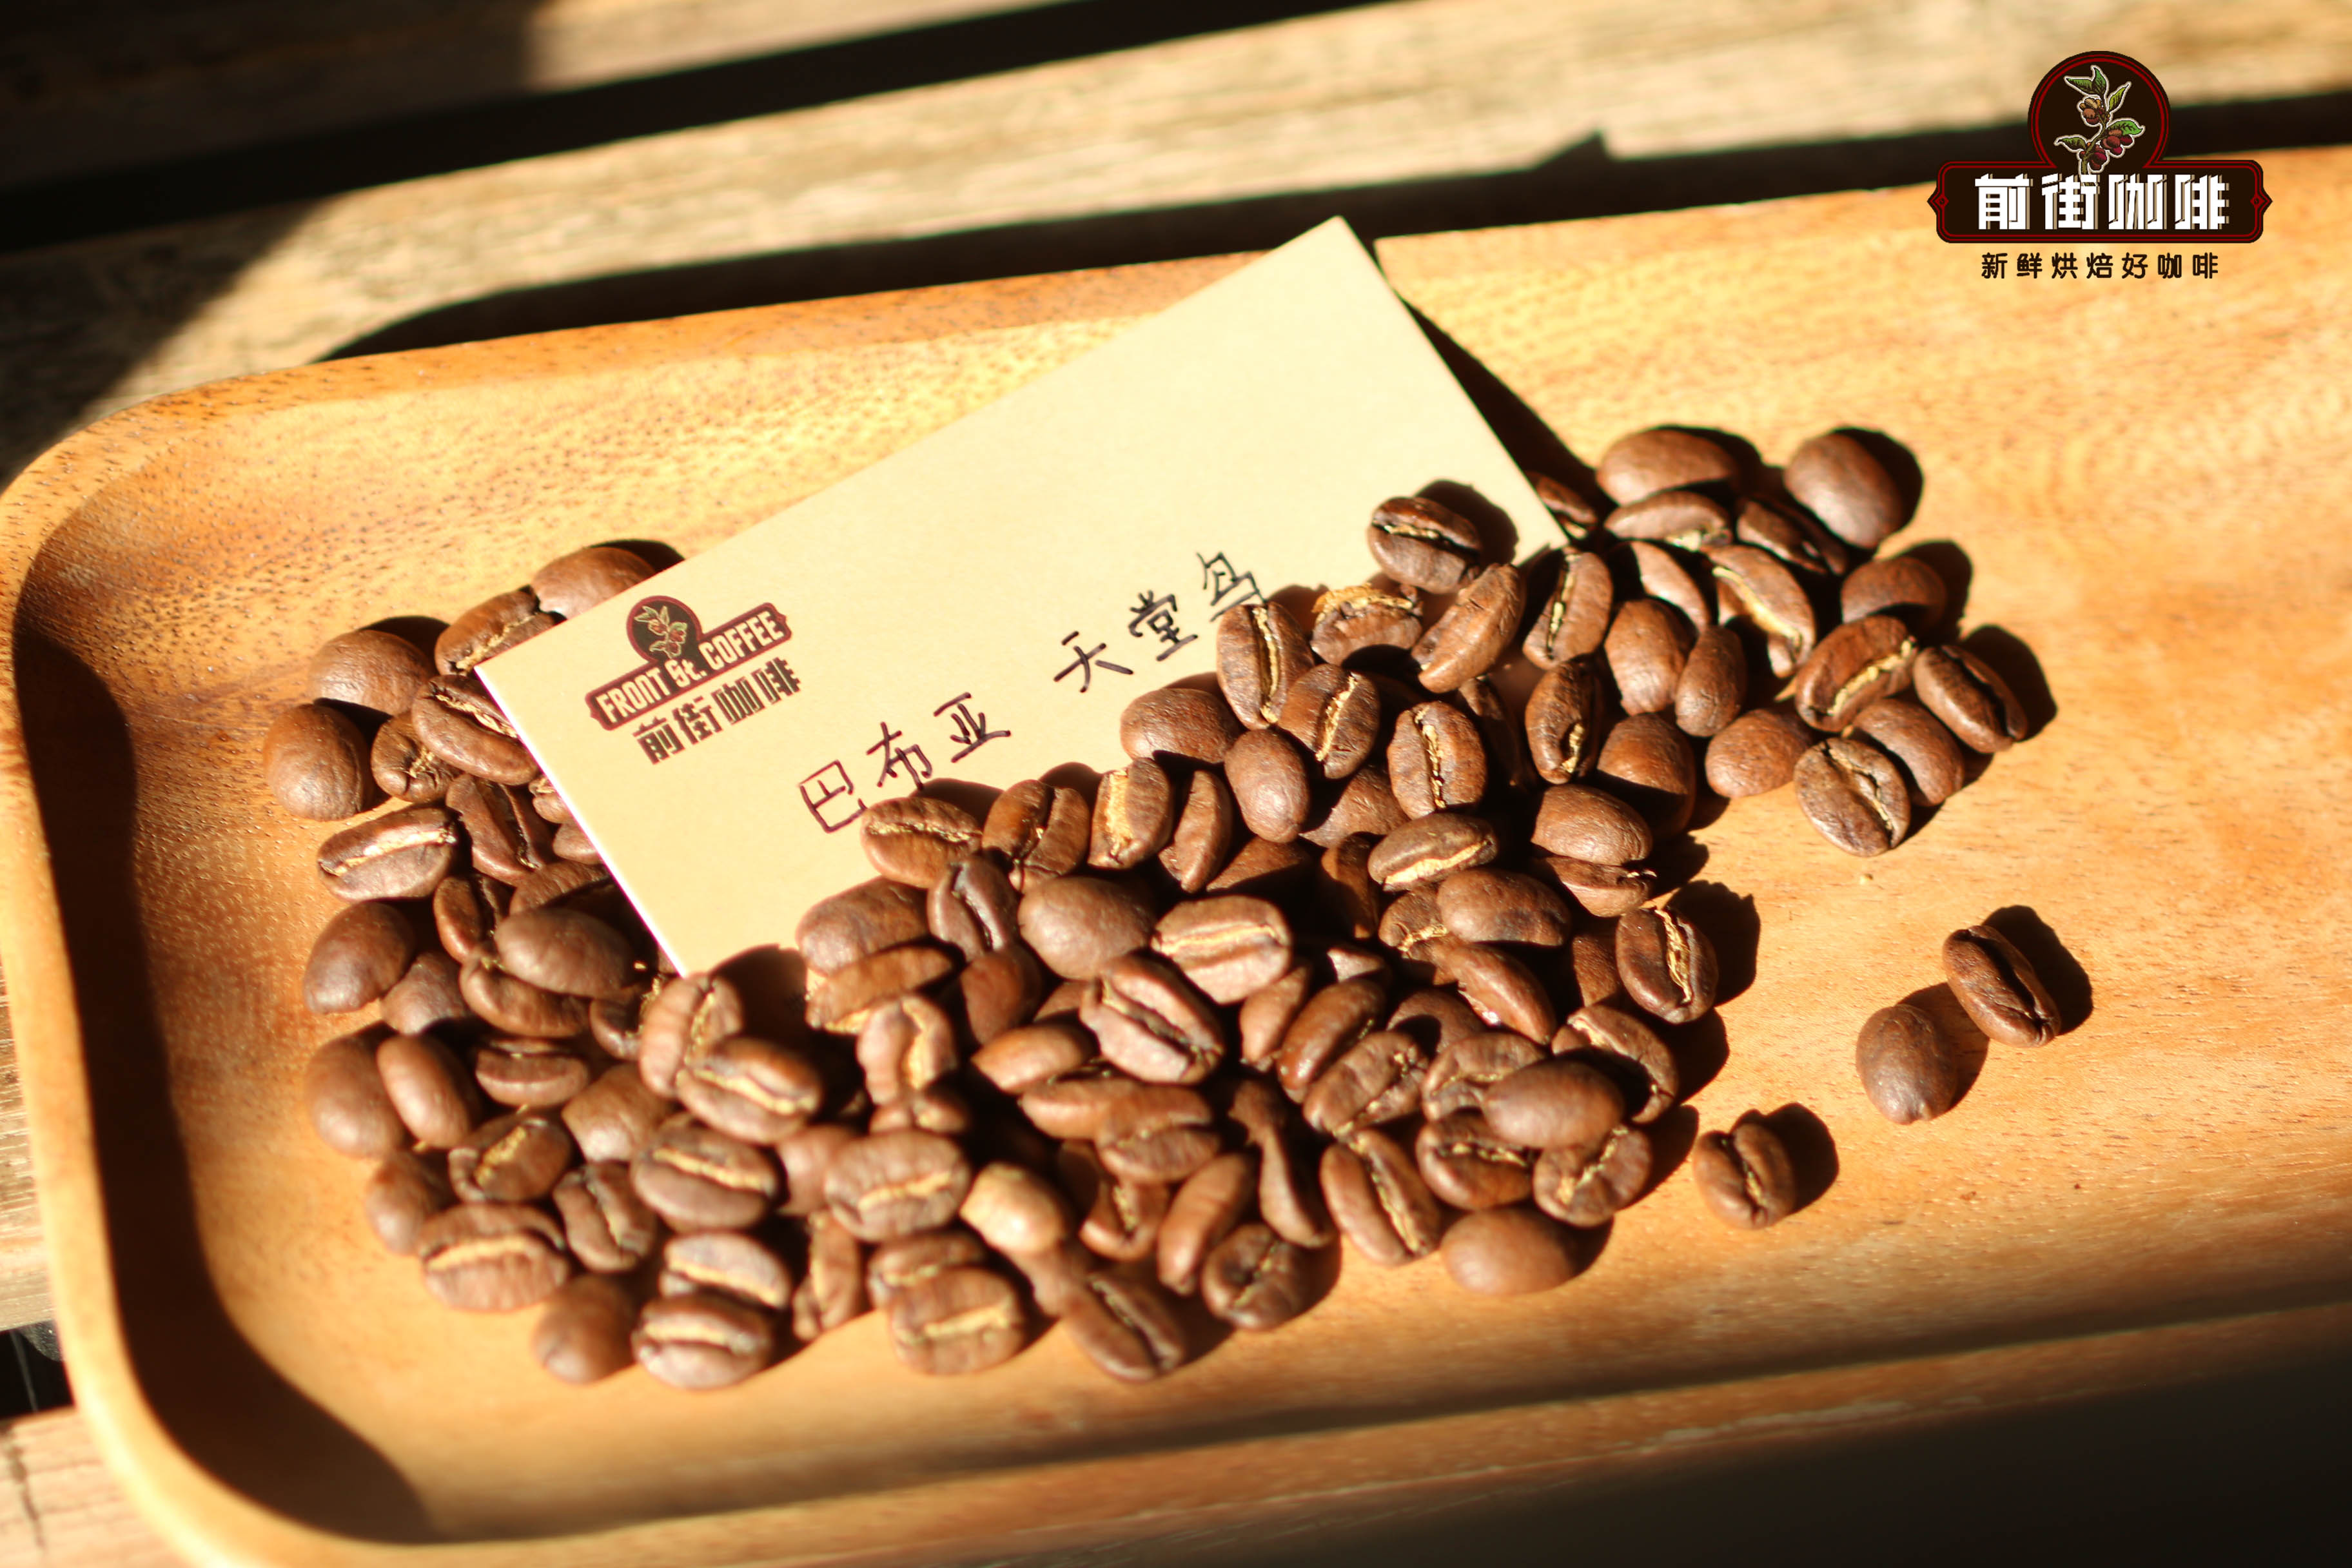 巴布新幾內亞咖啡產區介紹 天堂鳥咖啡豆特點風味口感